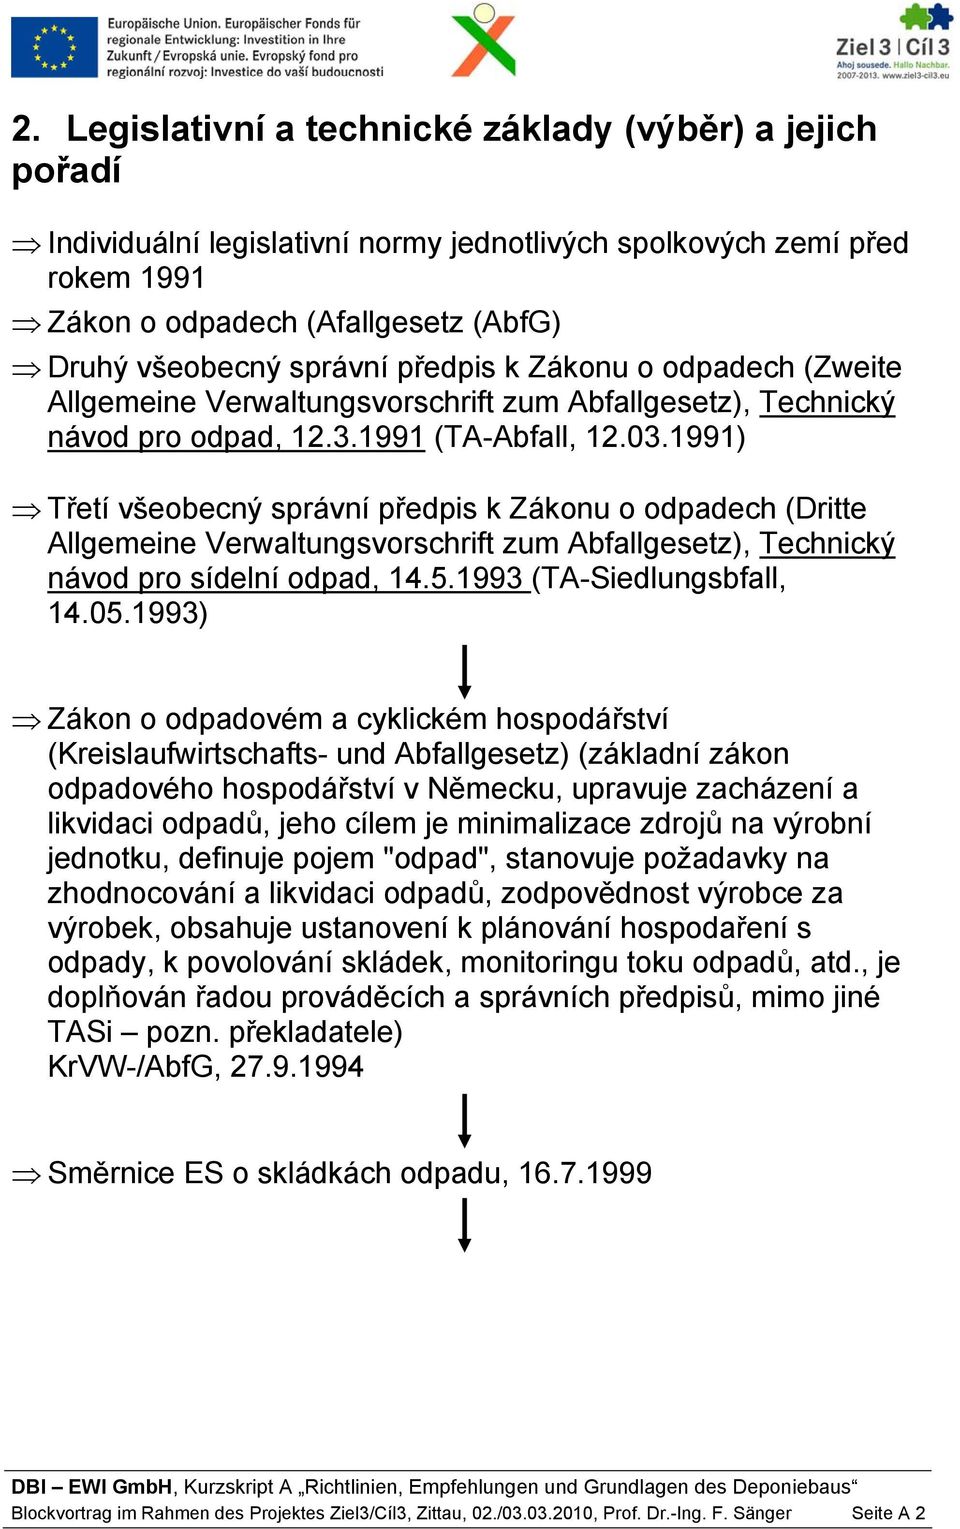 1991) Třetí všeobecný správní předpis k Zákonu o odpadech (Dritte Allgemeine Verwaltungsvorschrift zum Abfallgesetz), Technický návod pro sídelní odpad, 14.5.1993 (TA-Siedlungsbfall, 14.05.